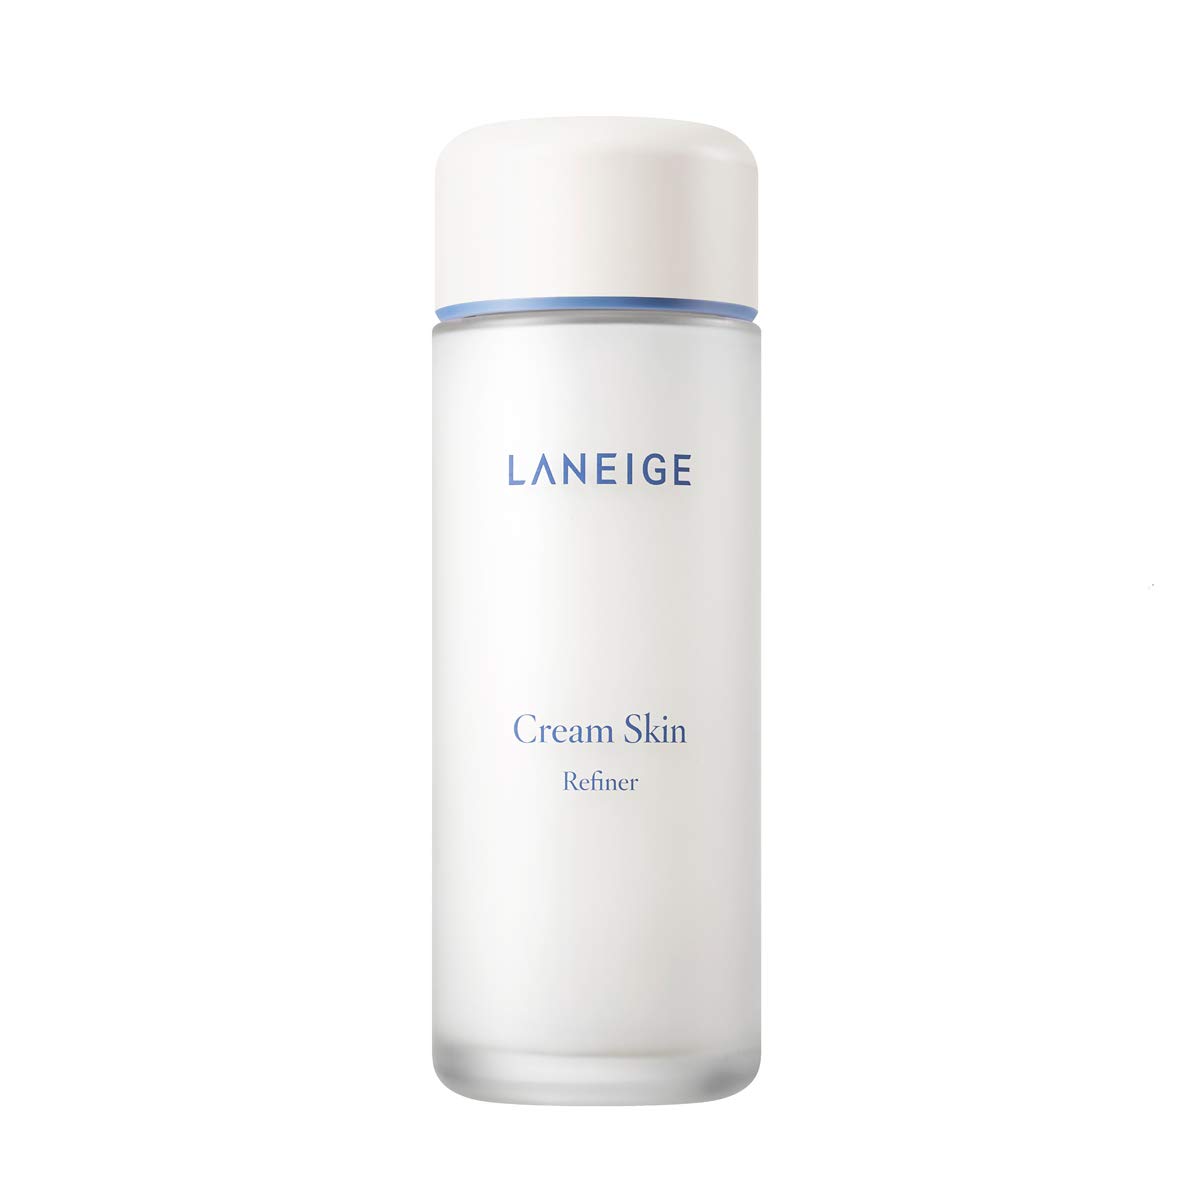 Laneige Cream Skin Refiner (150ml)